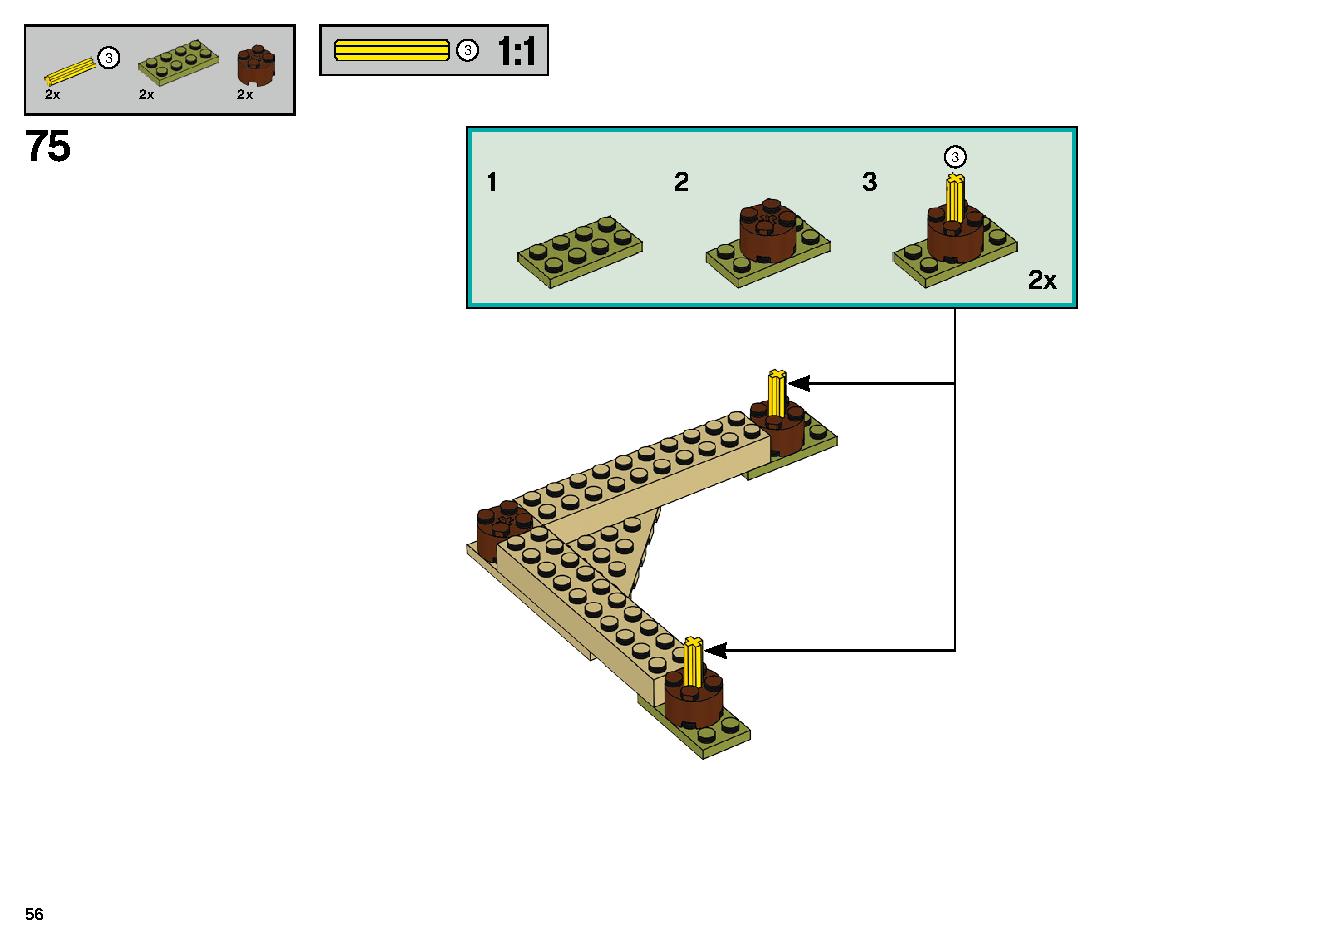 ゴーストのいる遊園地 70432 レゴの商品情報 レゴの説明書・組立方法 56 page